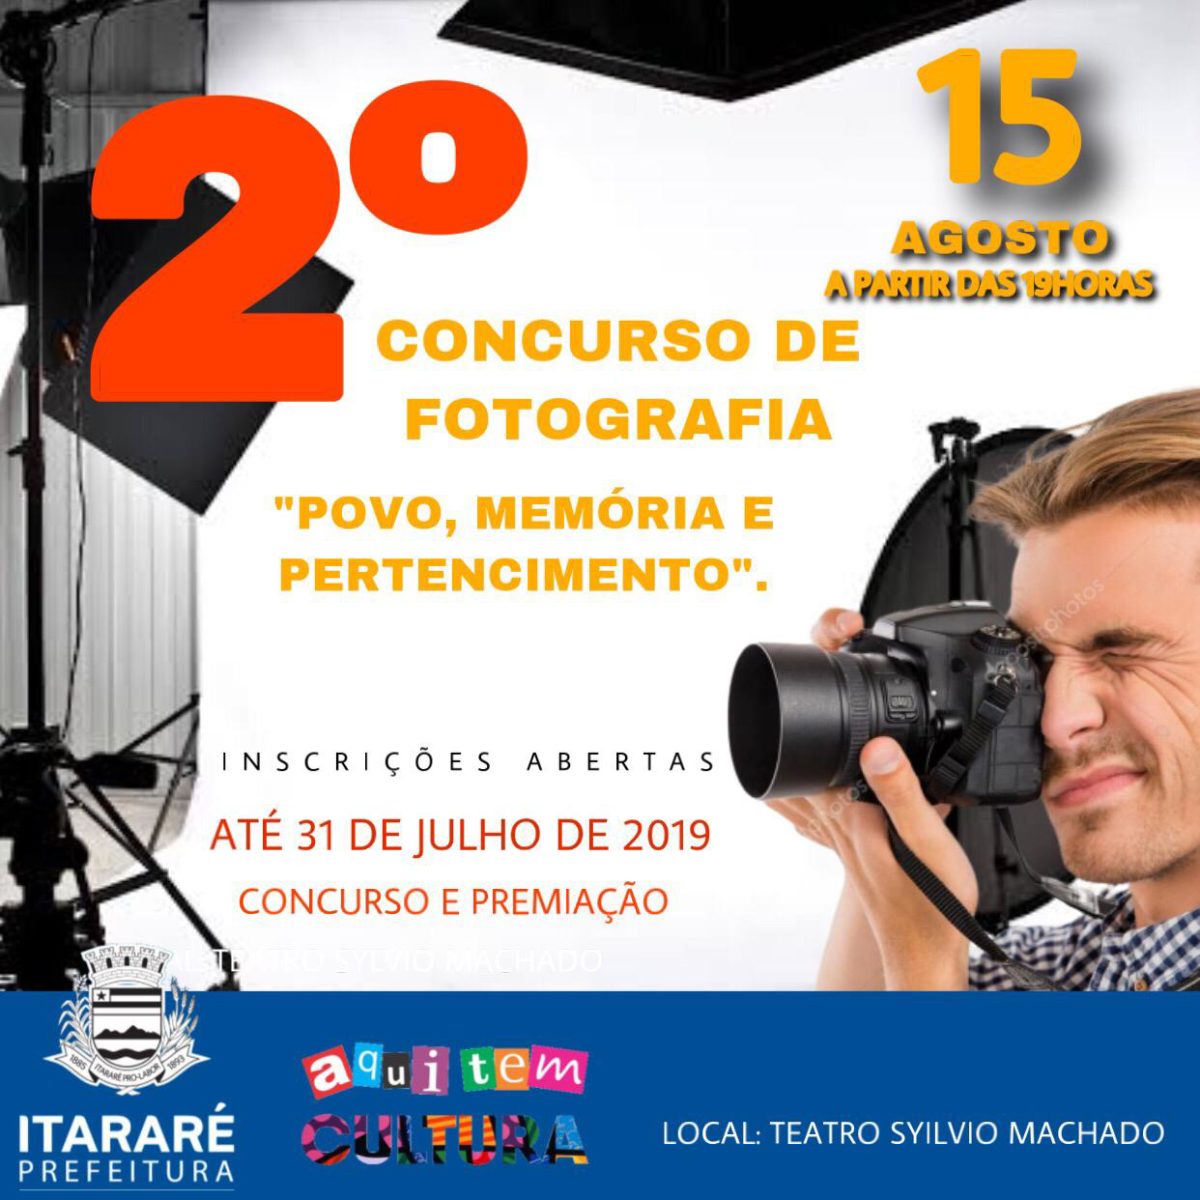 Terminam dia 31 as inscrições para o 2º concurso de fotografia em Itararé (SP)